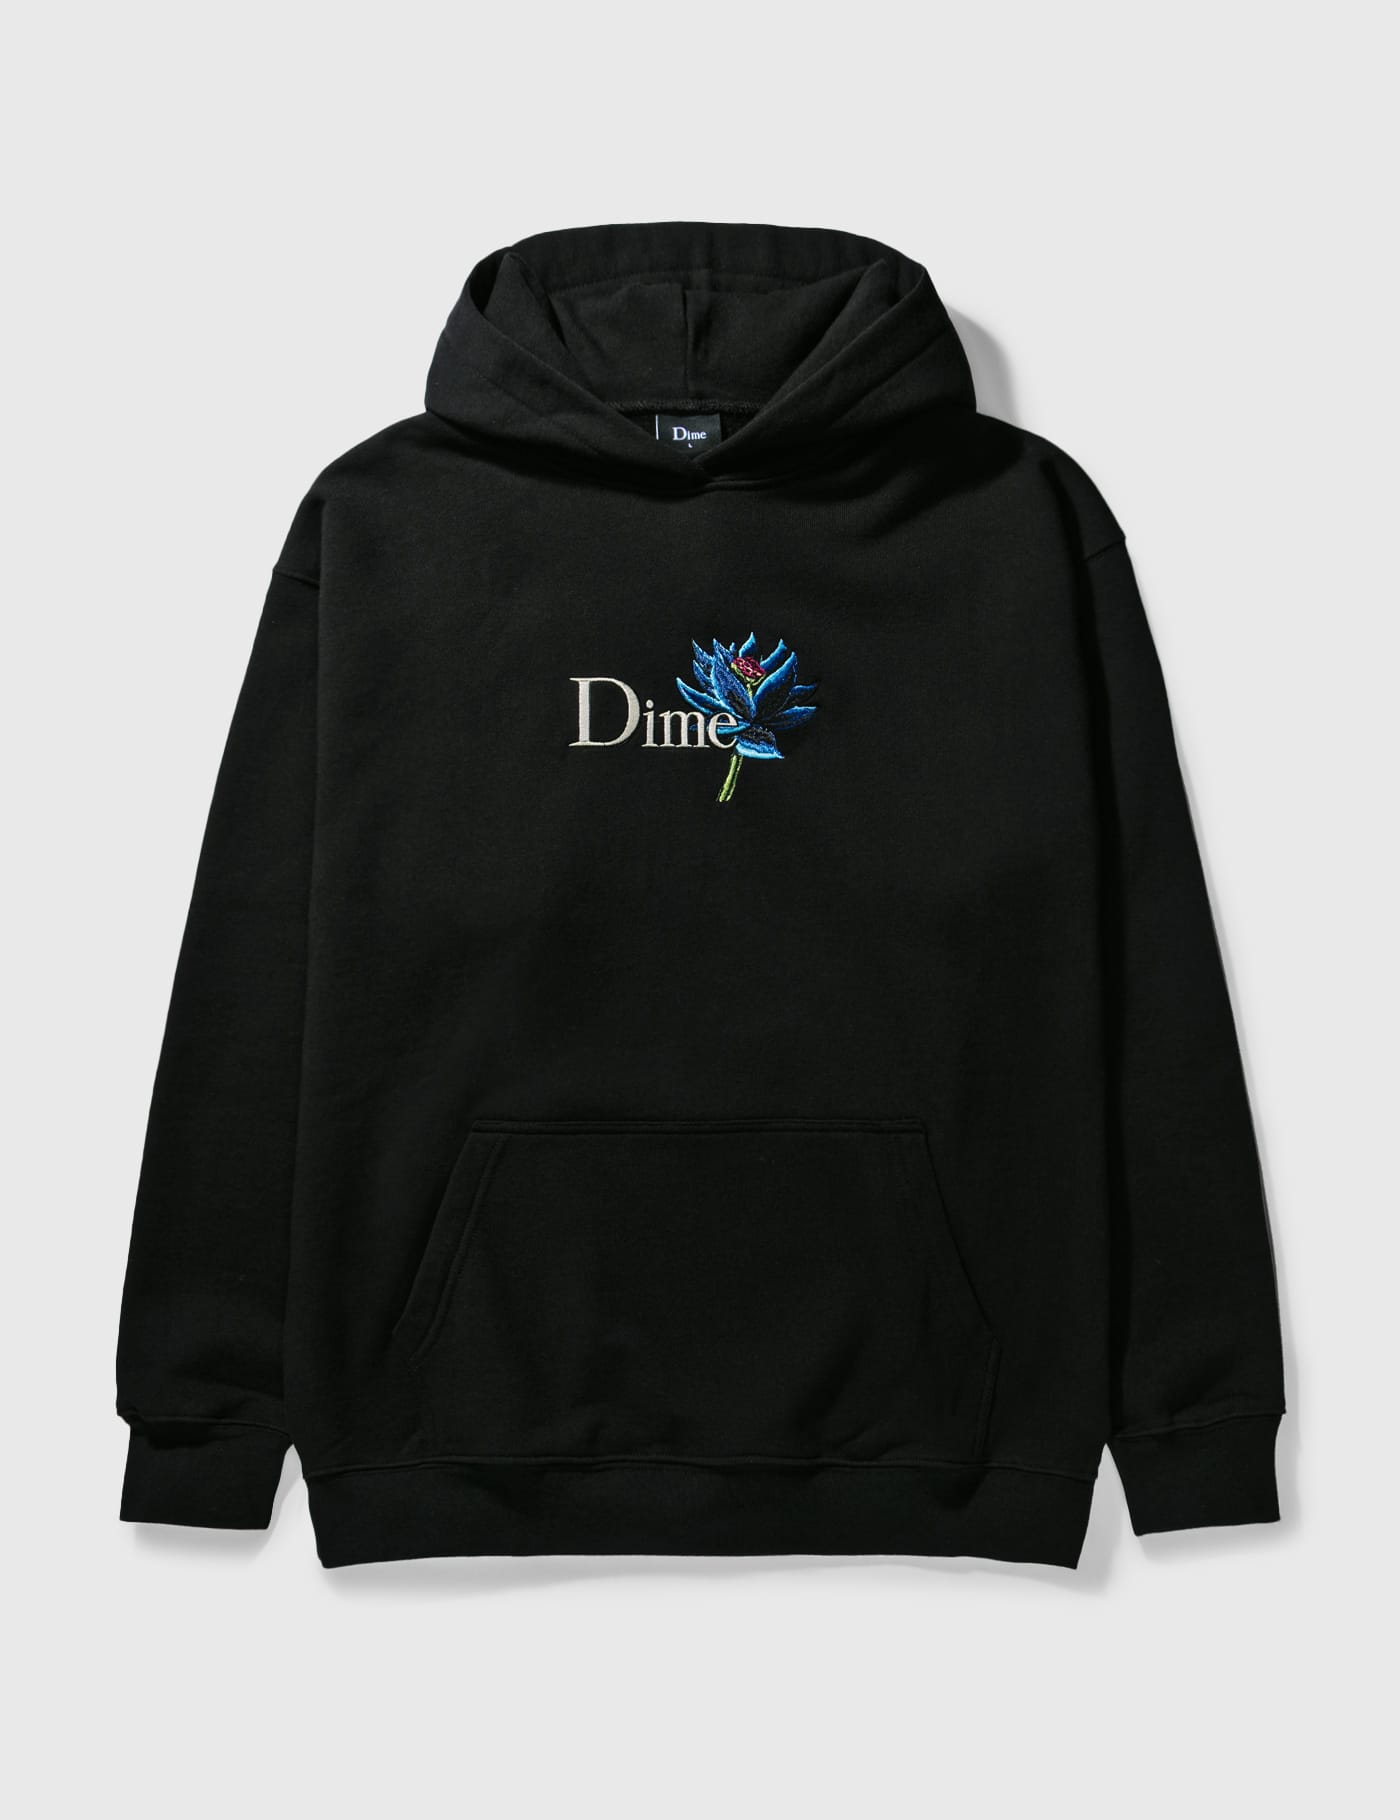 【最終値下げ】Dime black lotus hoodieよろしくお願いします